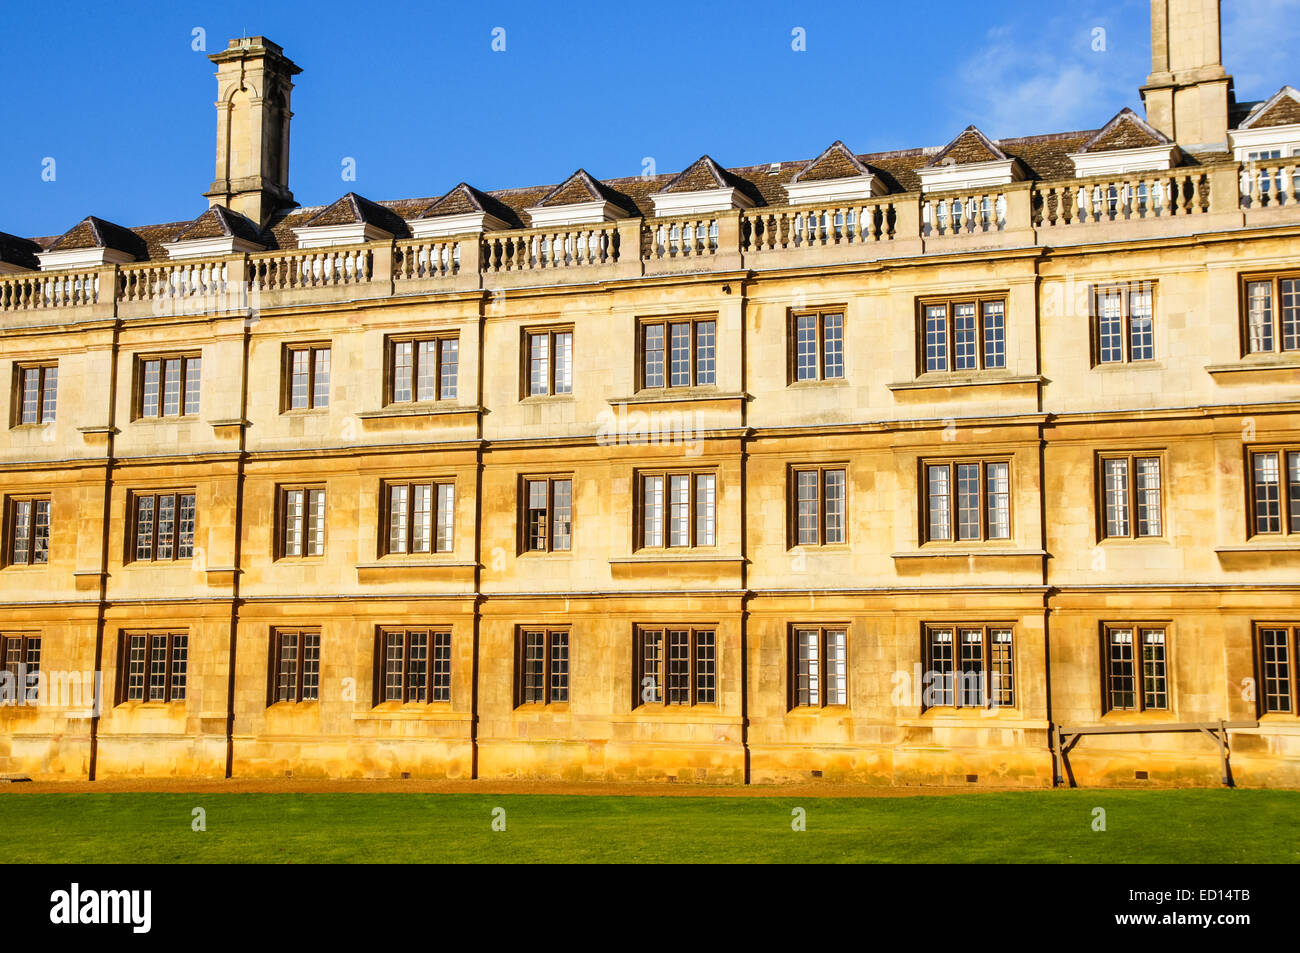 Der University of Cambridge, Fenster des Clare College in Cambridge Cambridgeshire England Vereinigtes Königreich Großbritannien Stockfoto